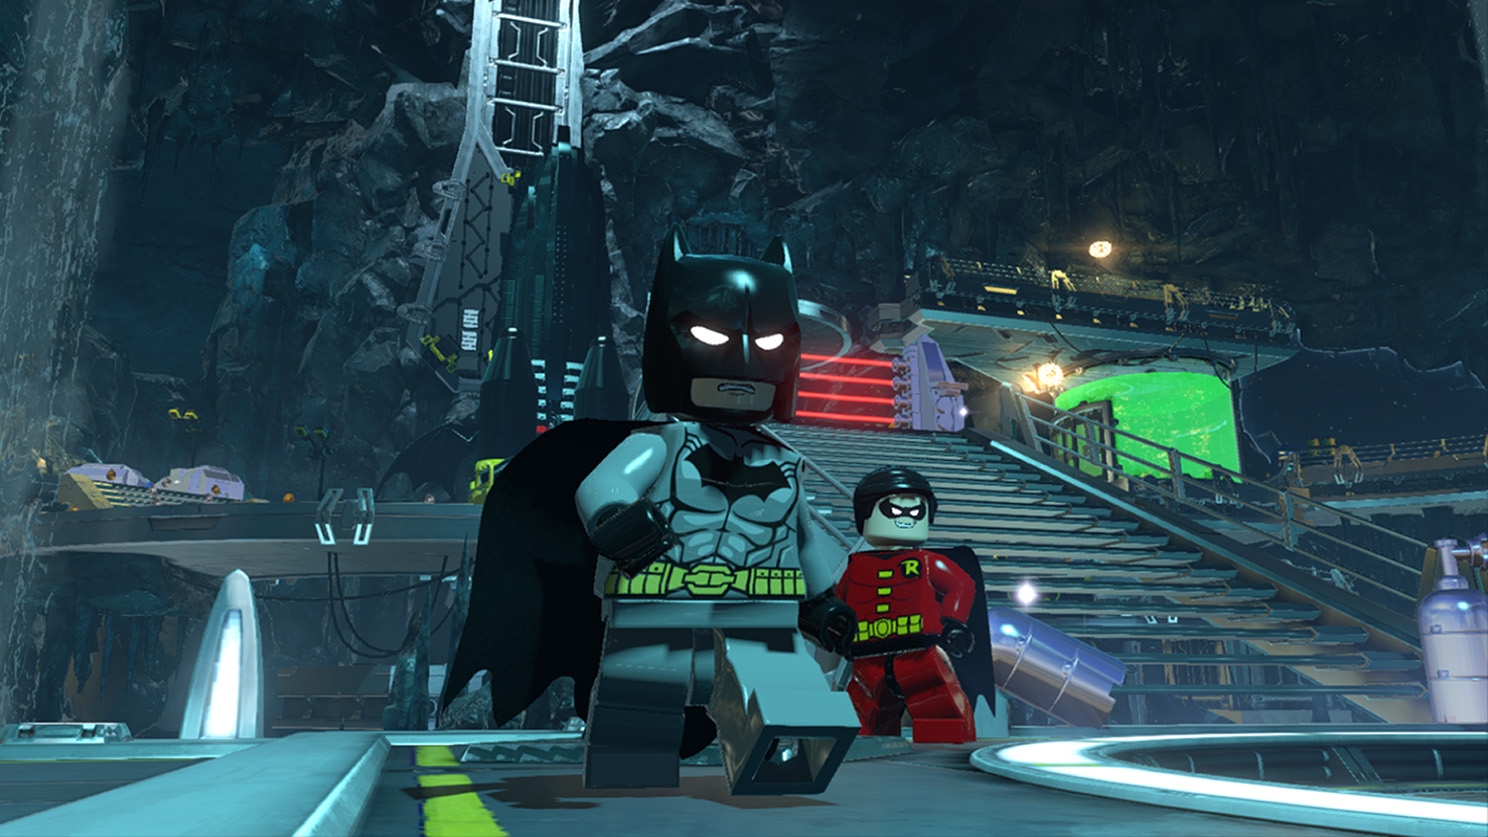 odym lego batman 3 characters